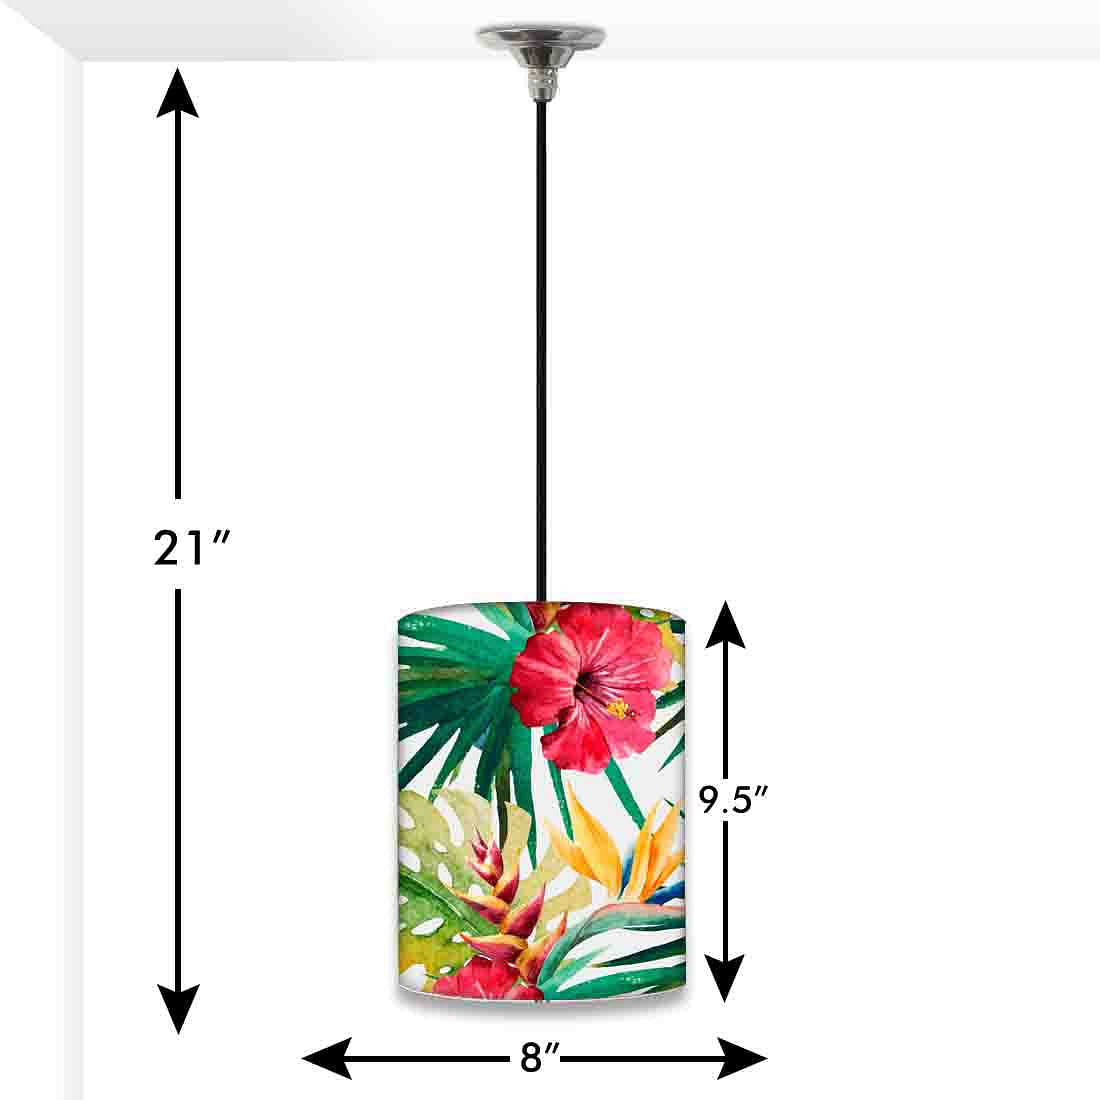 Designer Ceiling Lamps Lights for Bedroom - 0067 Nutcase